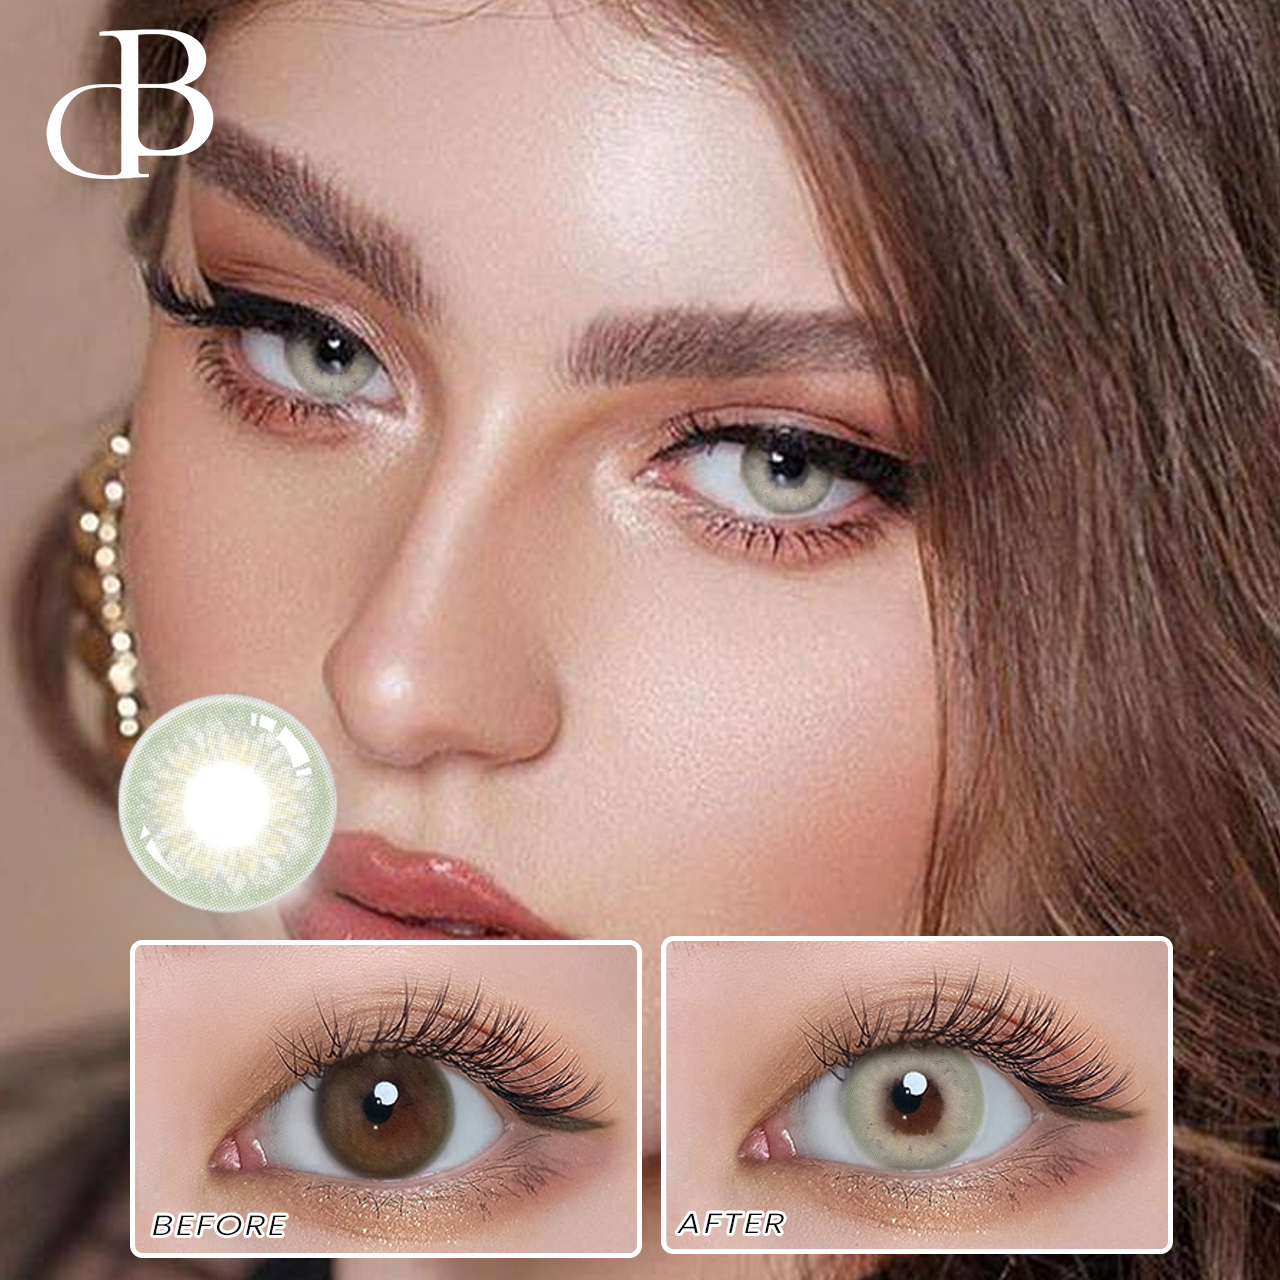 DBeye Grey prirodna kontaktna sočiva u boji kontaktna sočiva 12 mjeseci